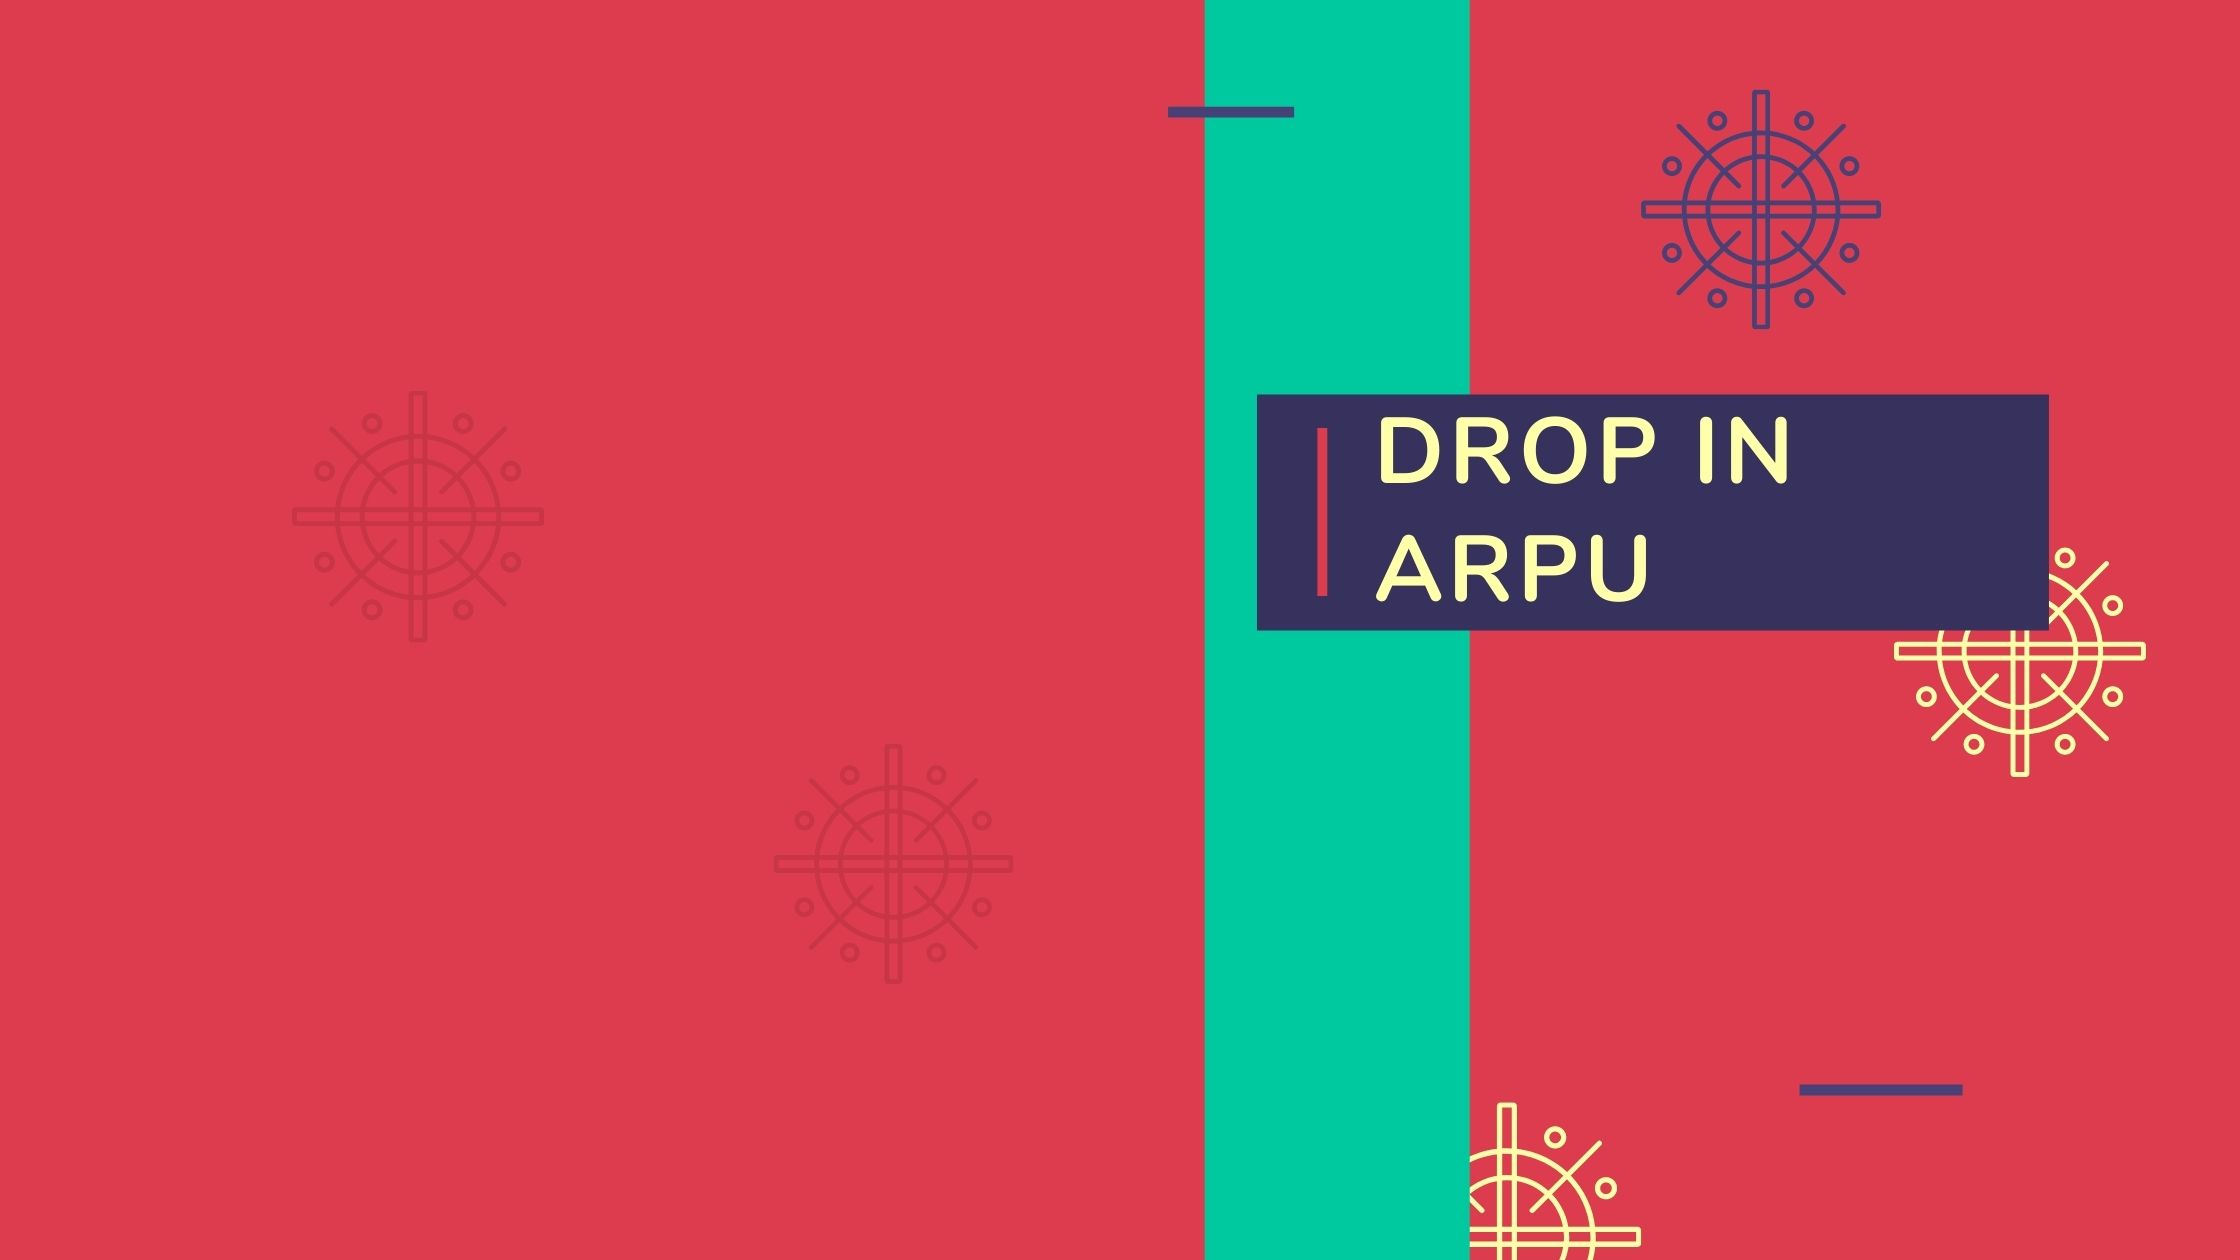 Drop in ARPU